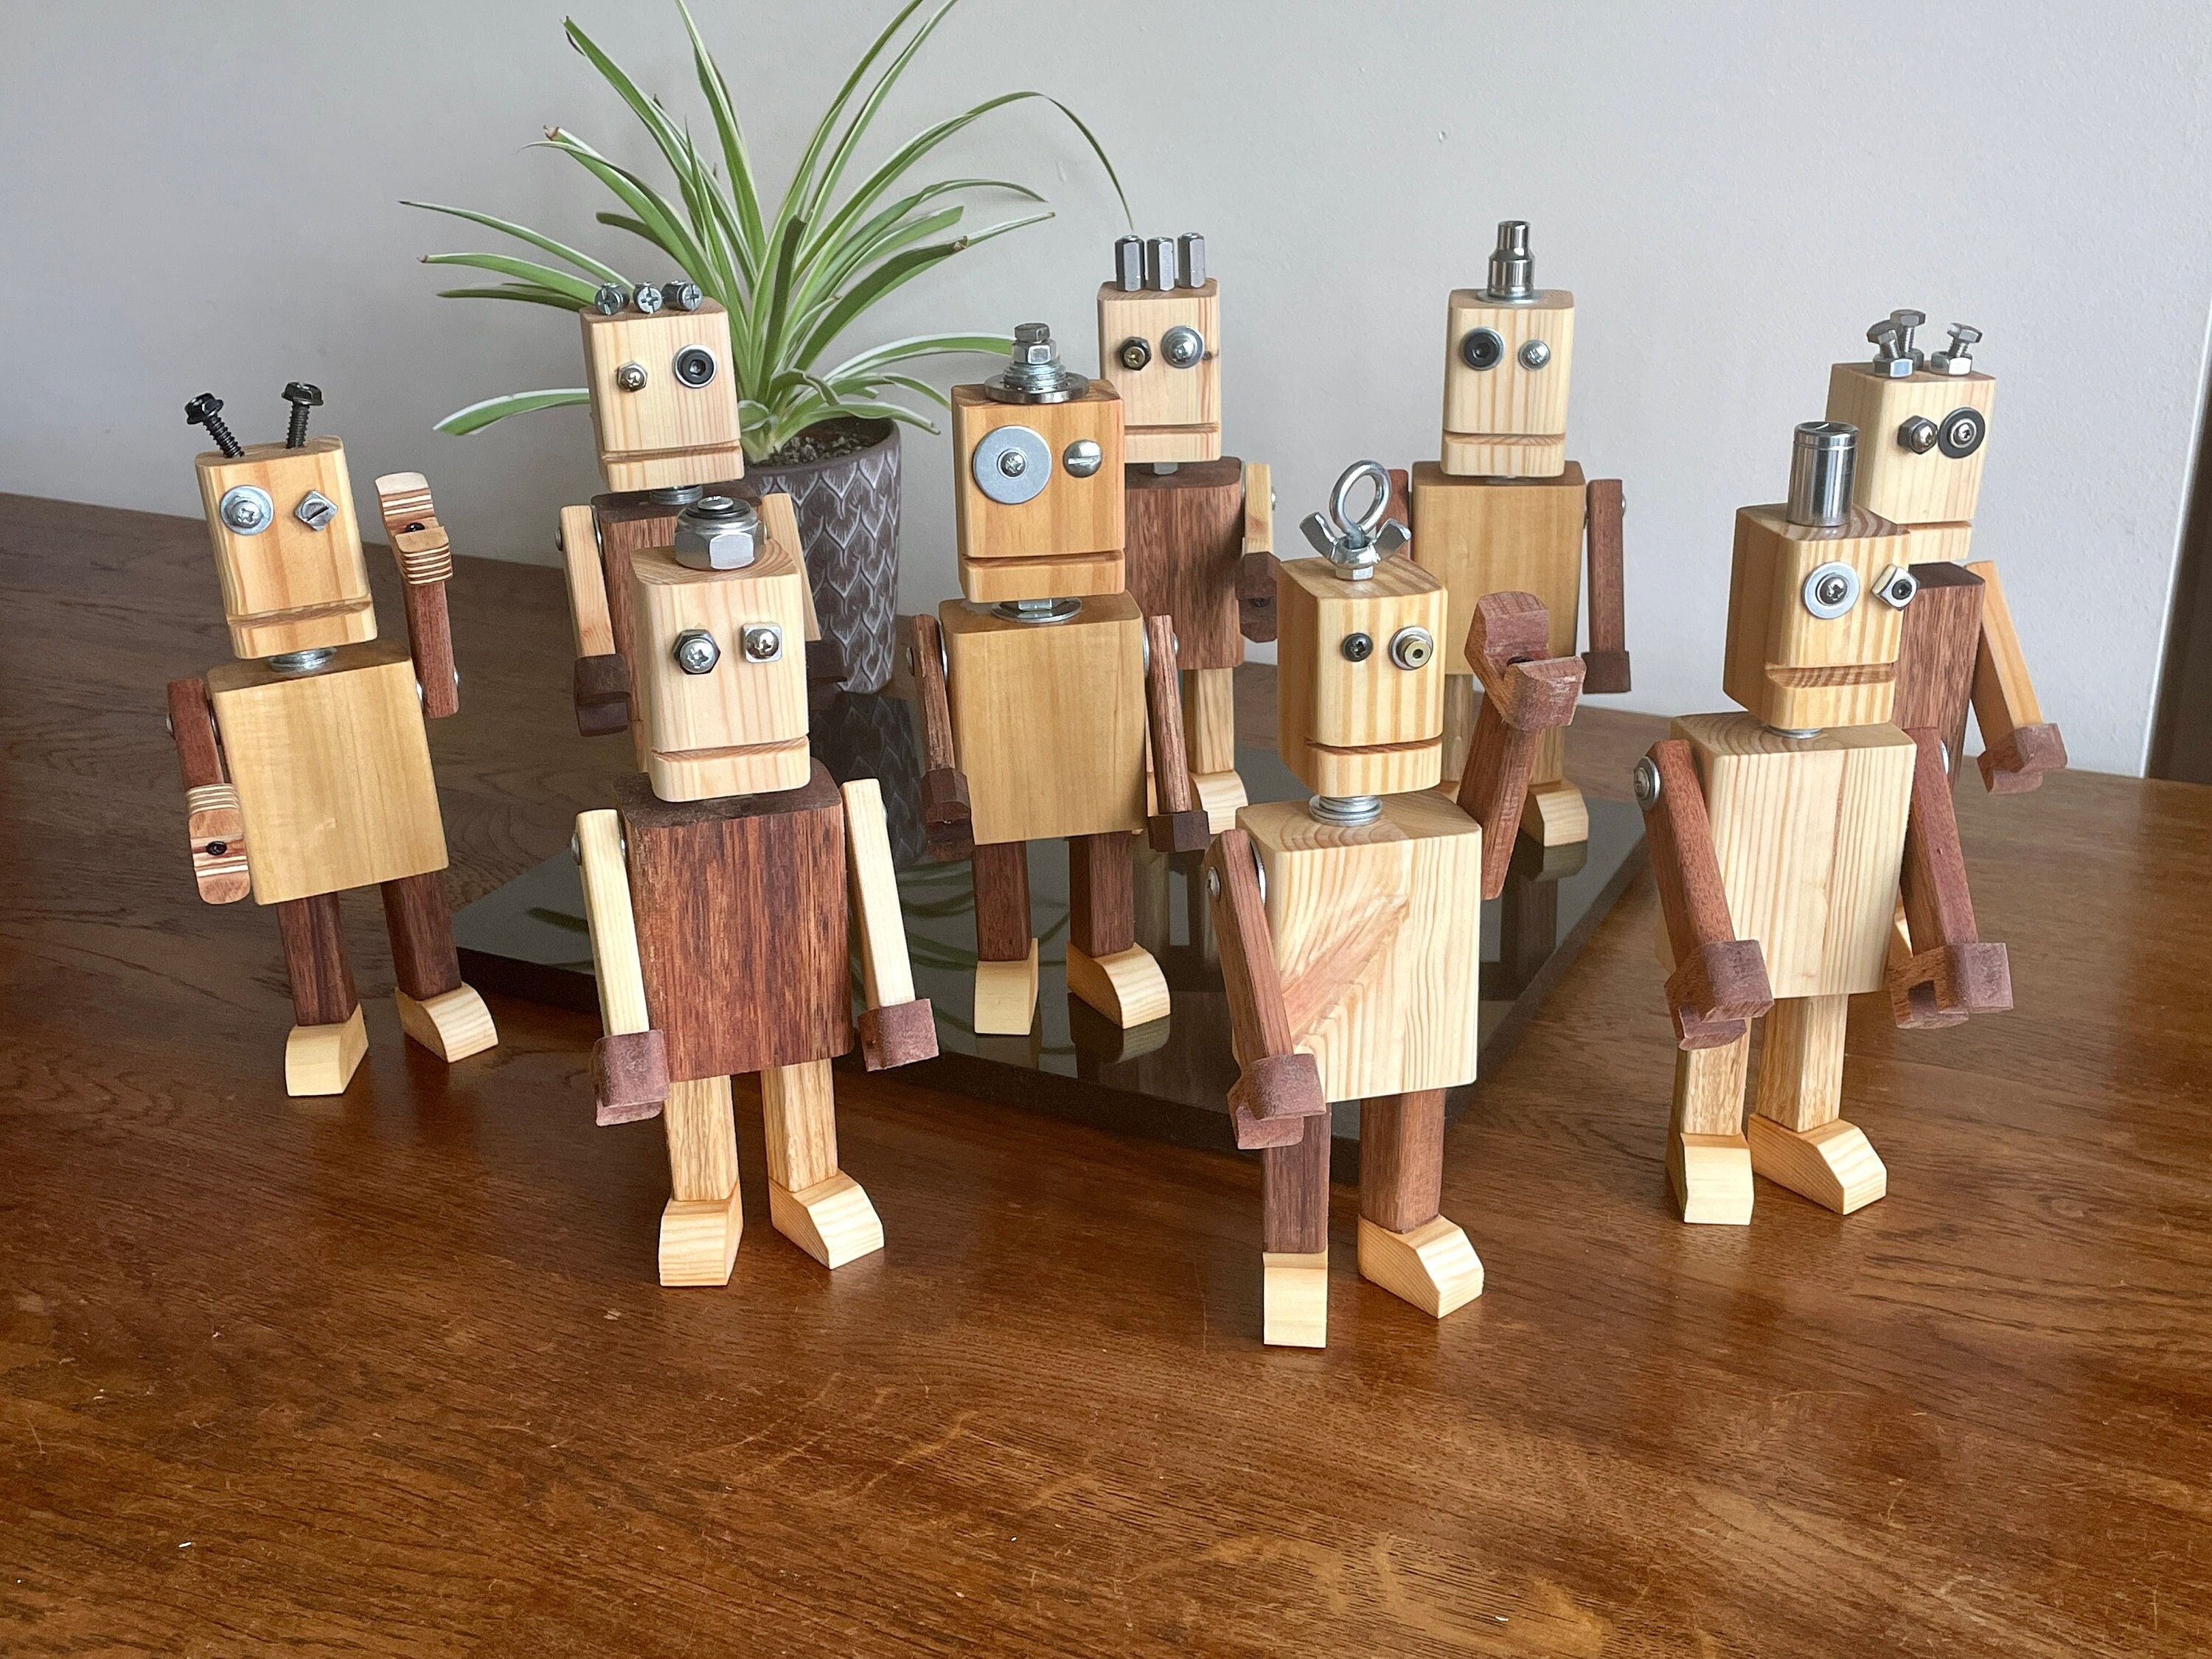 Modèle de robot en bois, cadeau en bois d'inspiration rétro